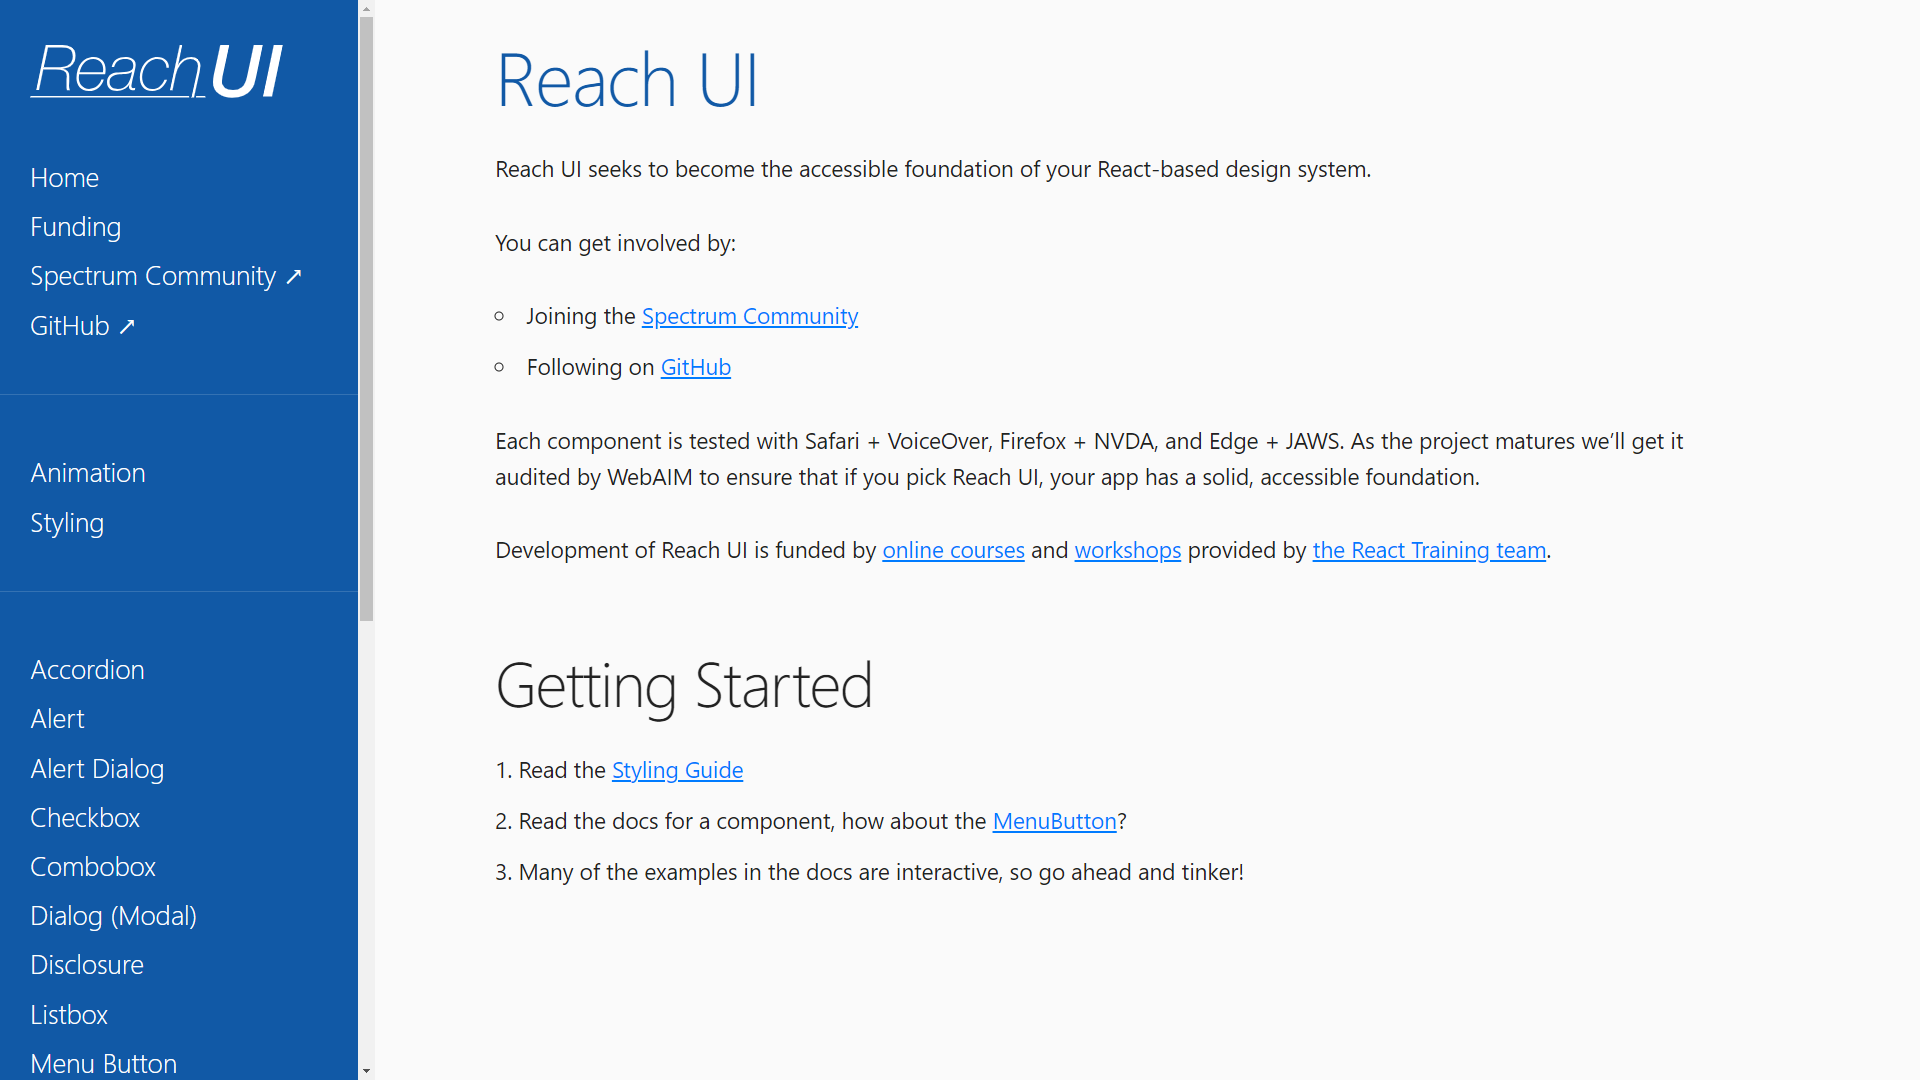 Reach UI homepage